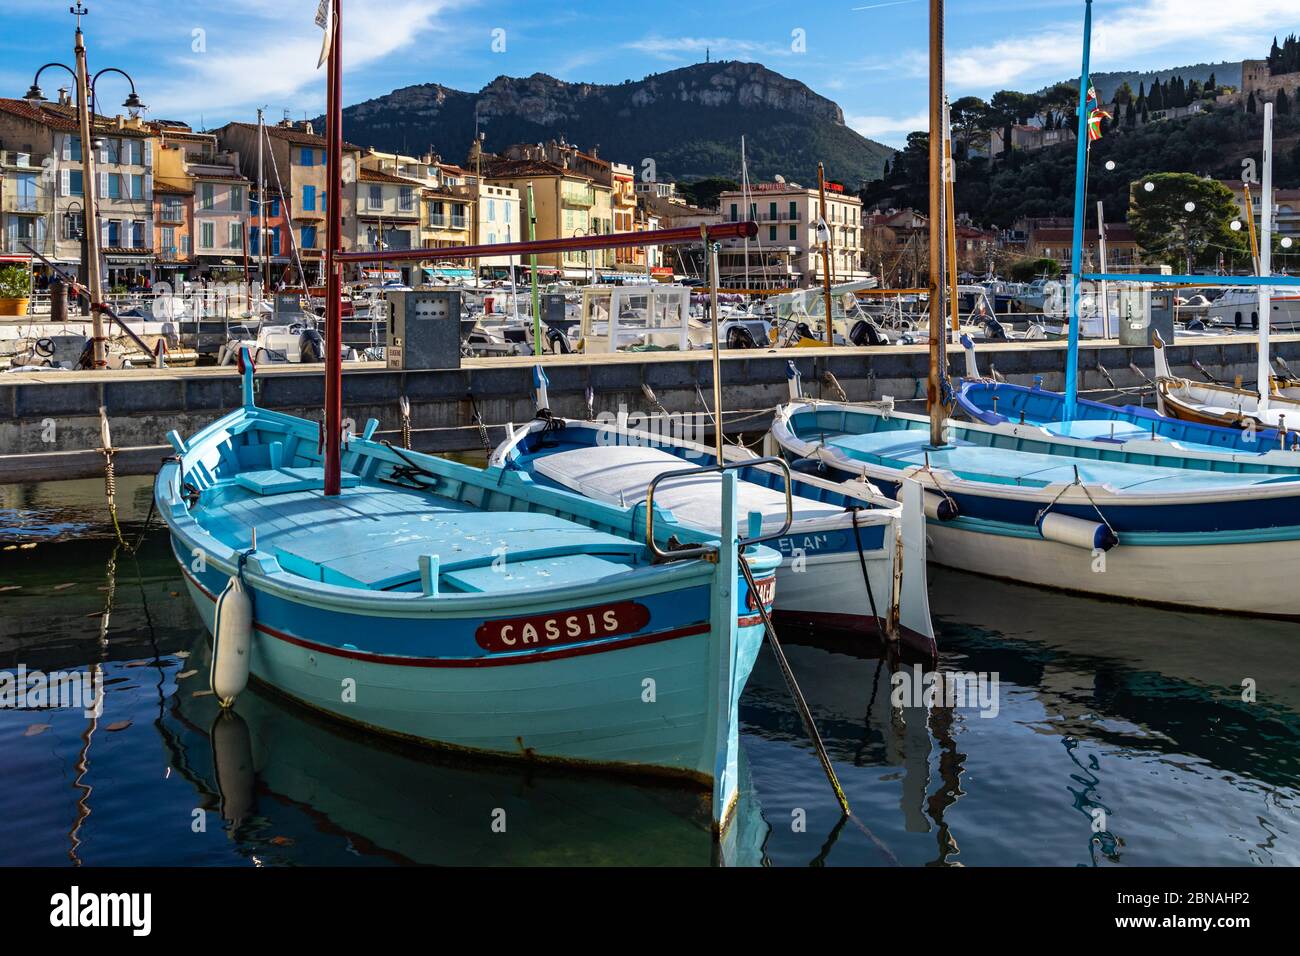 Des bateaux colorés amarrés au port pittoresque de Cassis, une célèbre station balnéaire du sud de la France. Cassis, France, janvier 2020 Banque D'Images